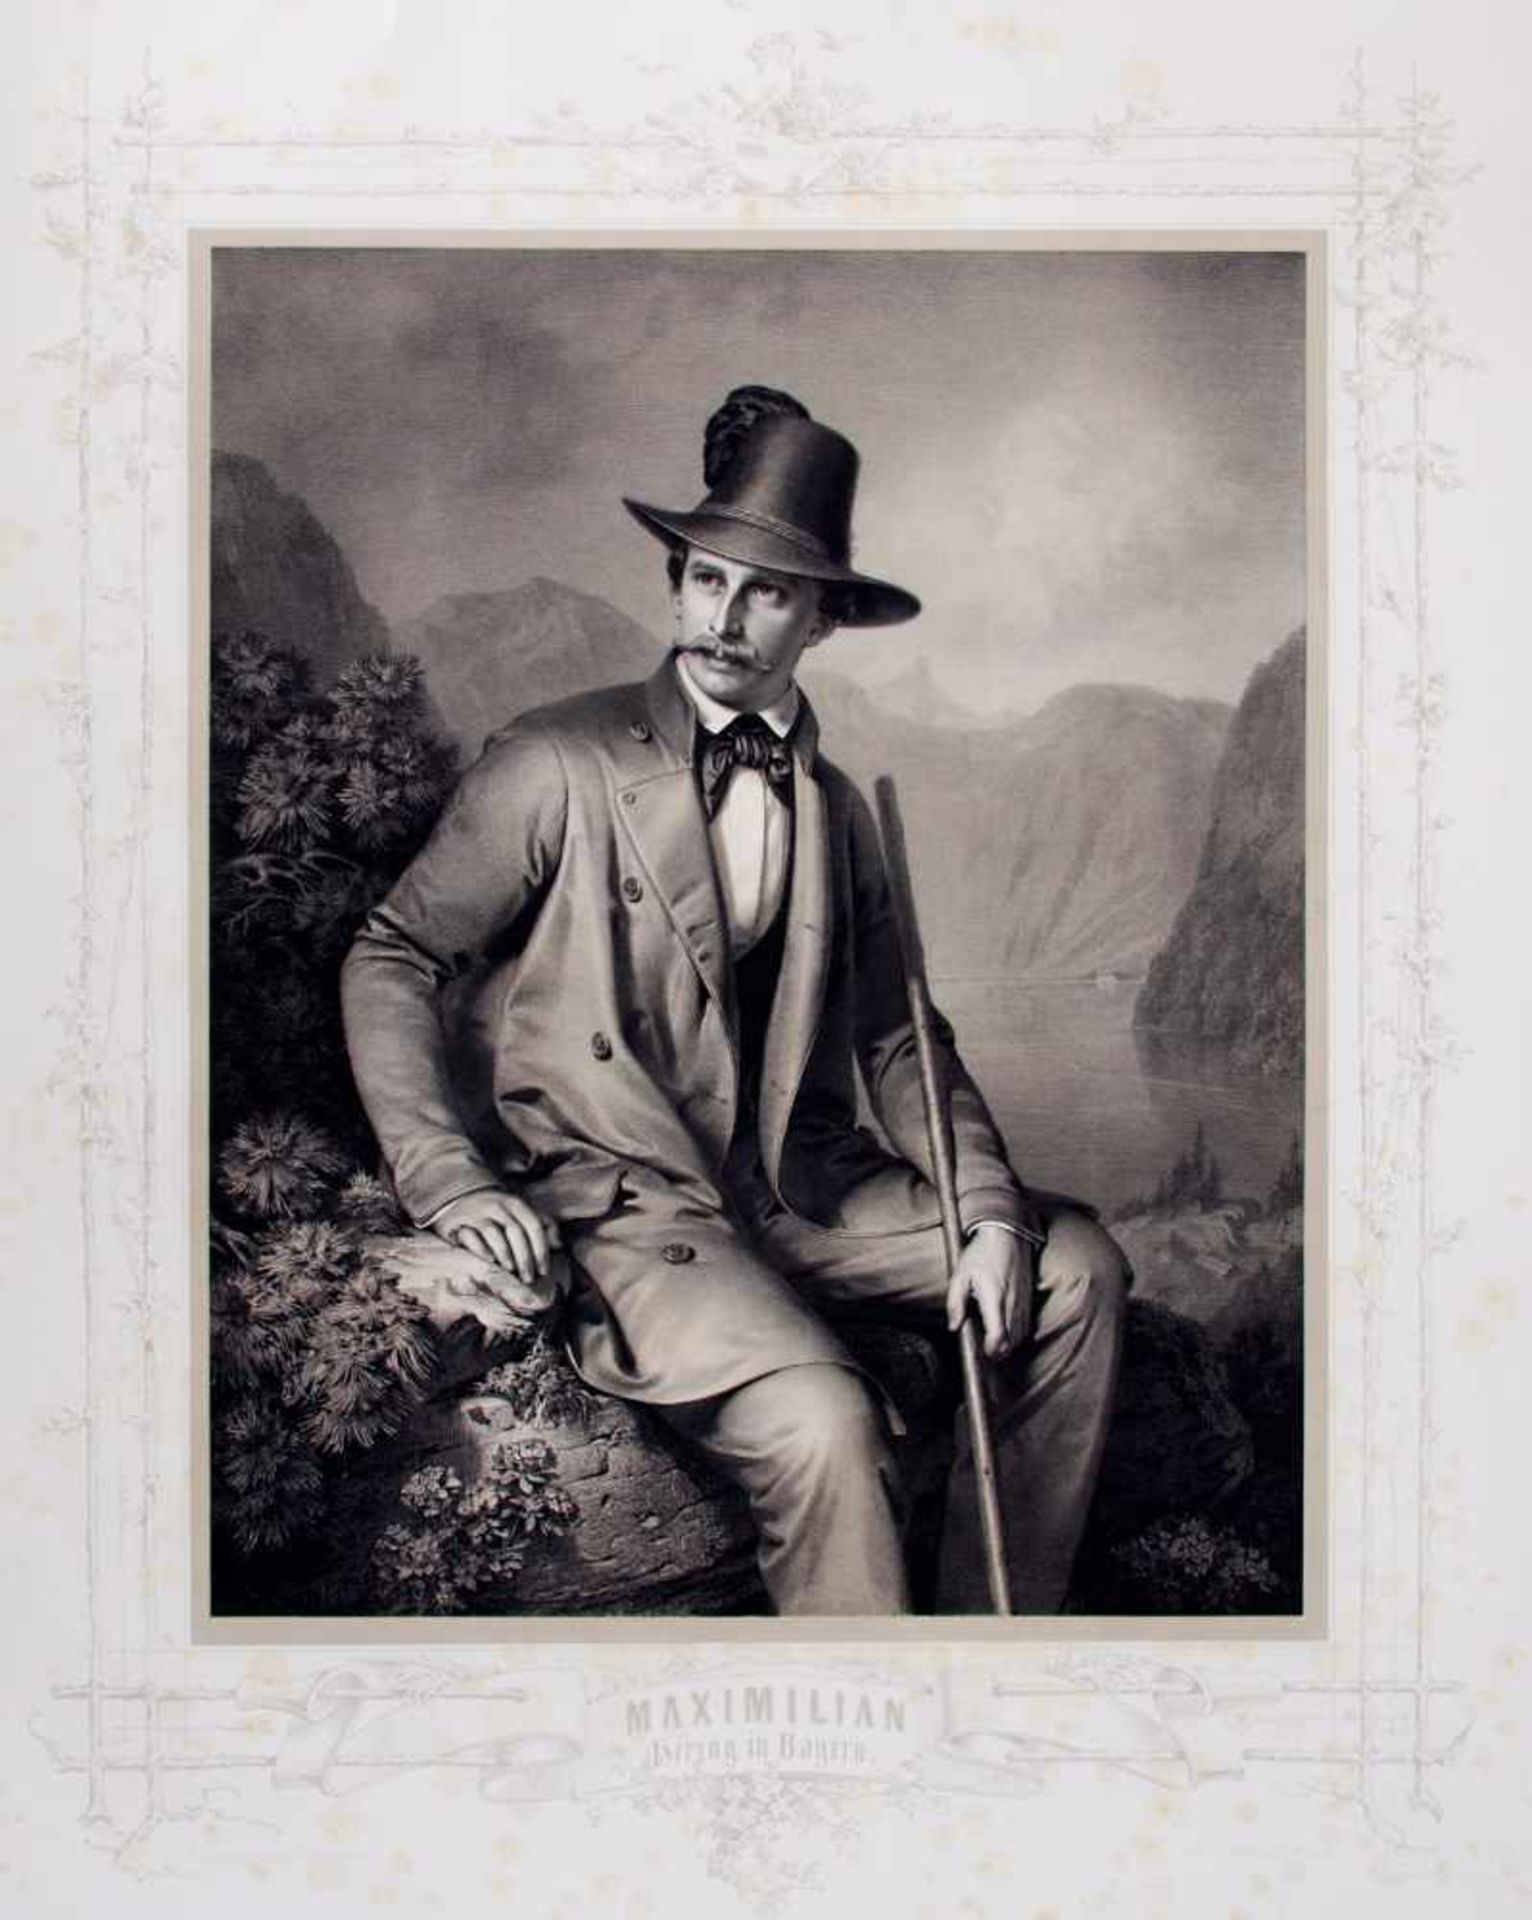 Porträts - "Maximilian Herzog in Bayern".Kniestück. Getönte Lithographie von E. Correns, bei